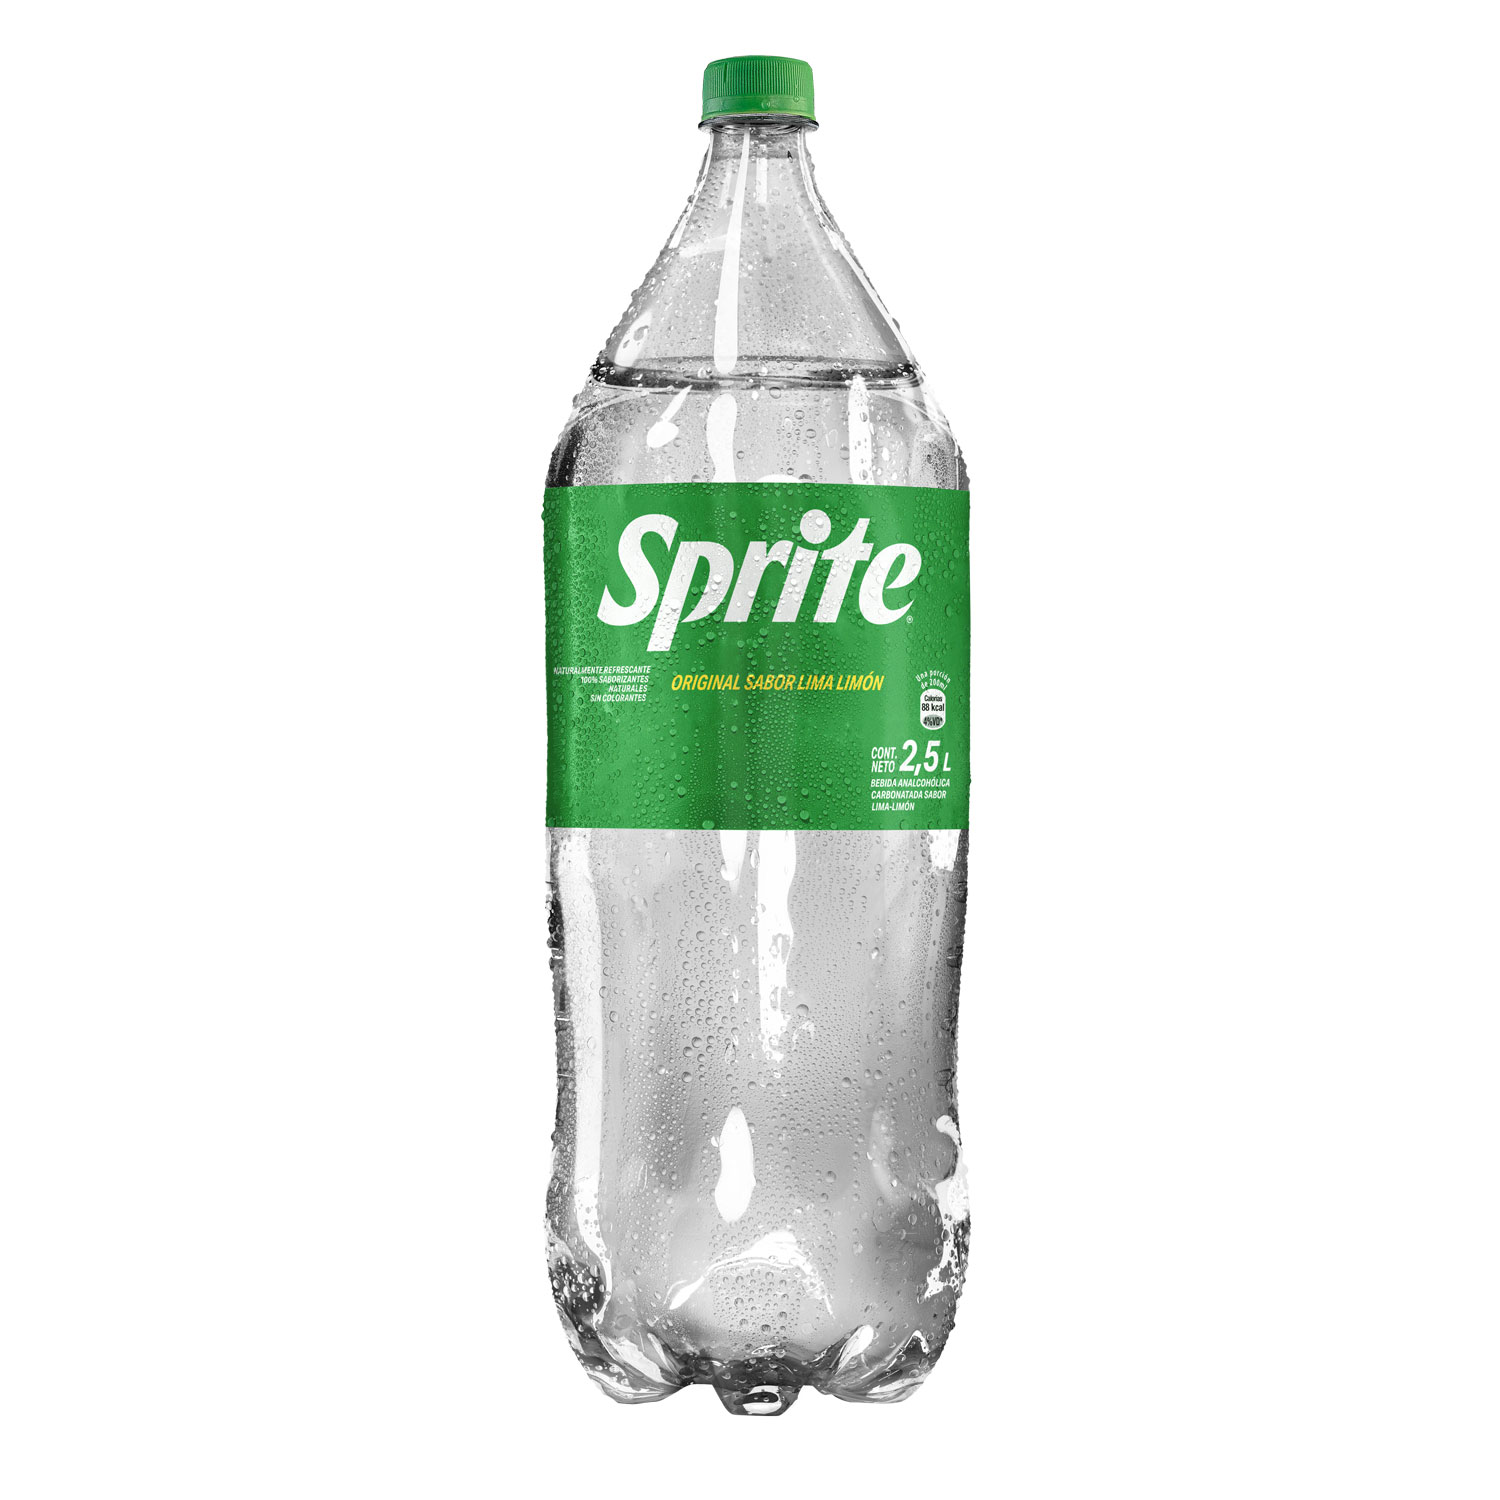 Botella de Sprite Lima Limón 2,5